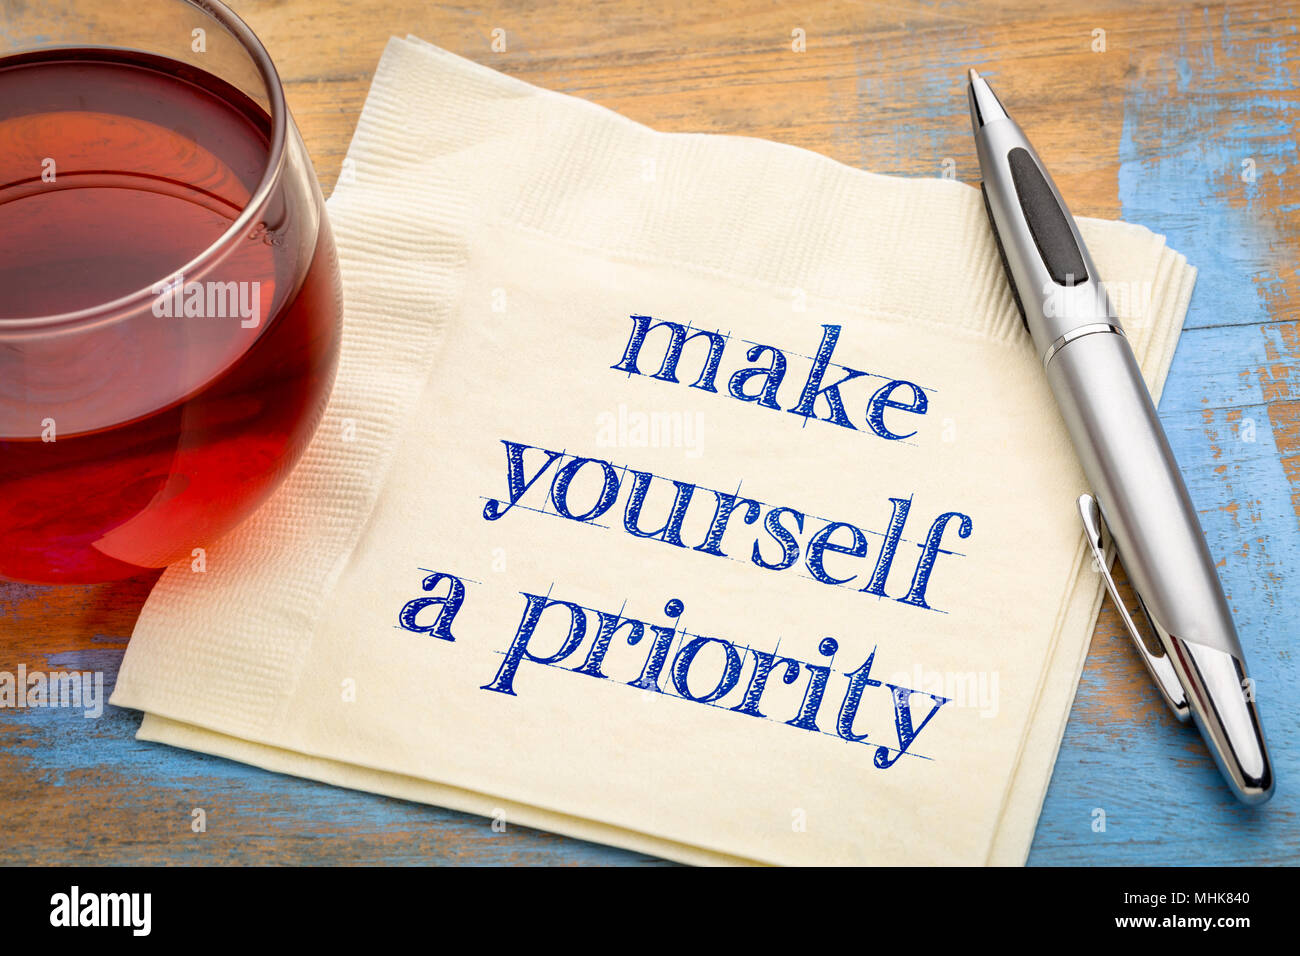 Machen Sie sich eine Priorität Beratung - Handschrift auf eine Serviette mit einer Tasse Tee Stockfoto